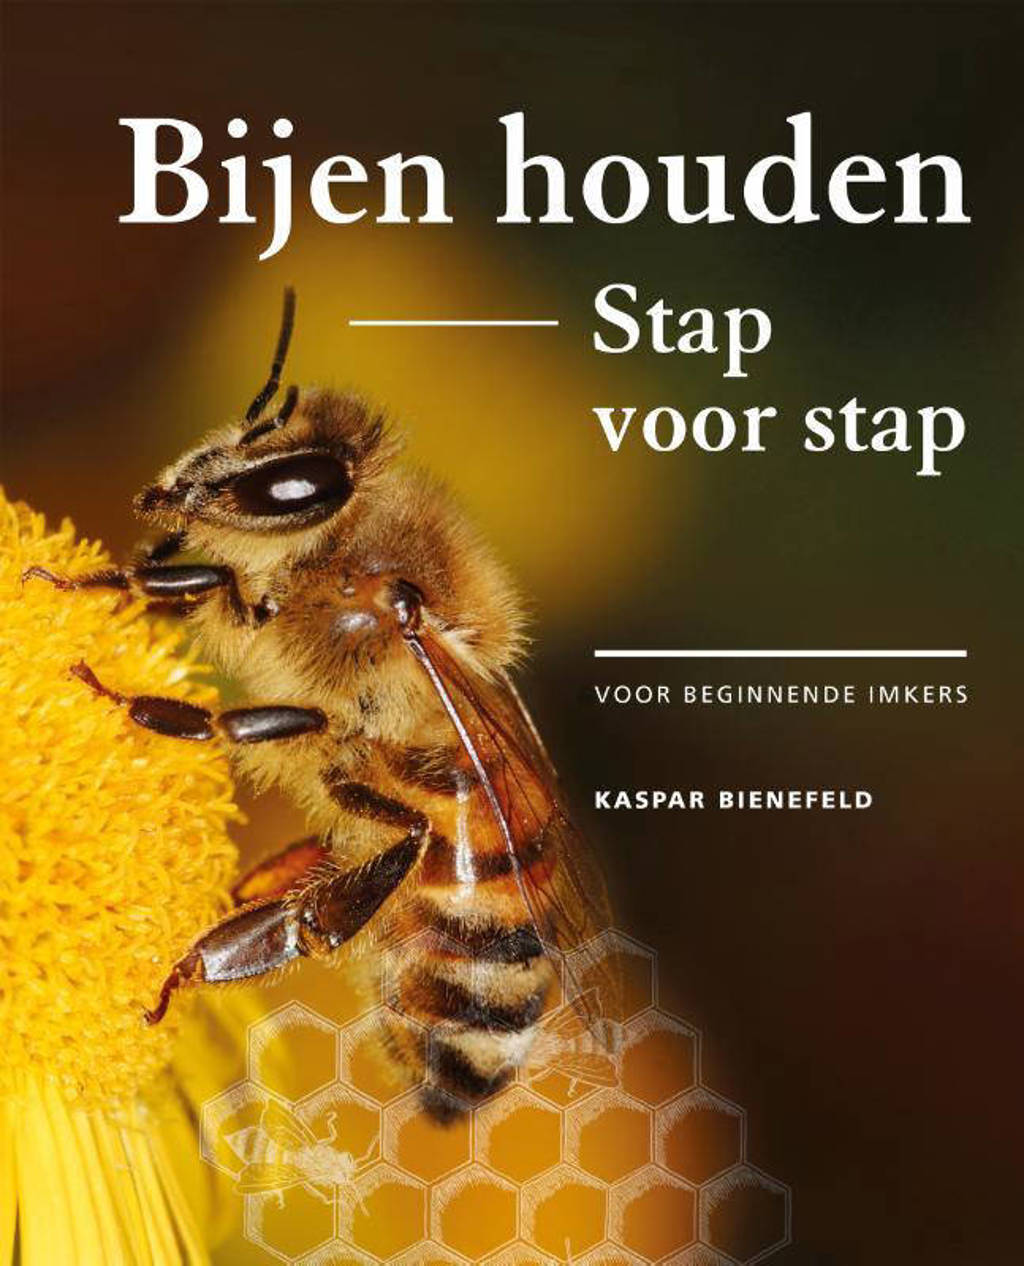 Bijen houden stap voor stap - Kaspar Bienefeld